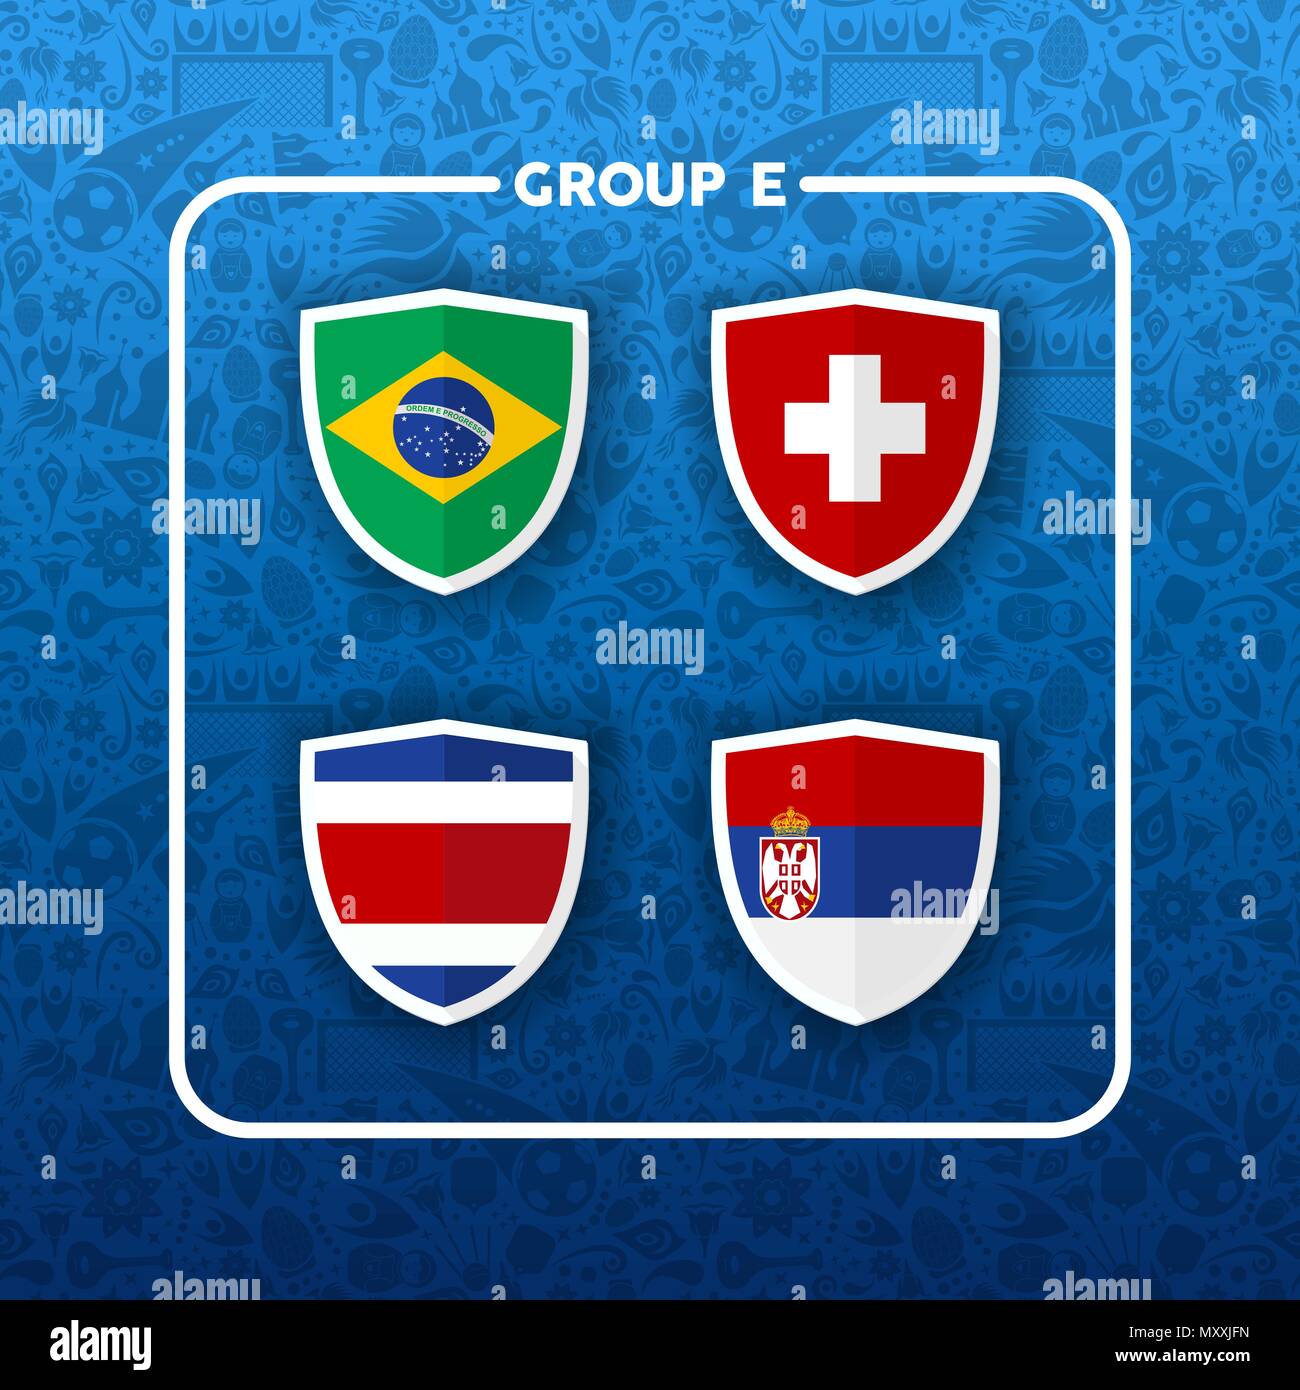 Fußball-Weltmeisterschaft Veranstaltungsplan für 2018. Gruppe E Land team Liste der Fußball-Match spiele. Brasilien, Costa Rica, Serbien und die Schweiz. E Stock Vektor